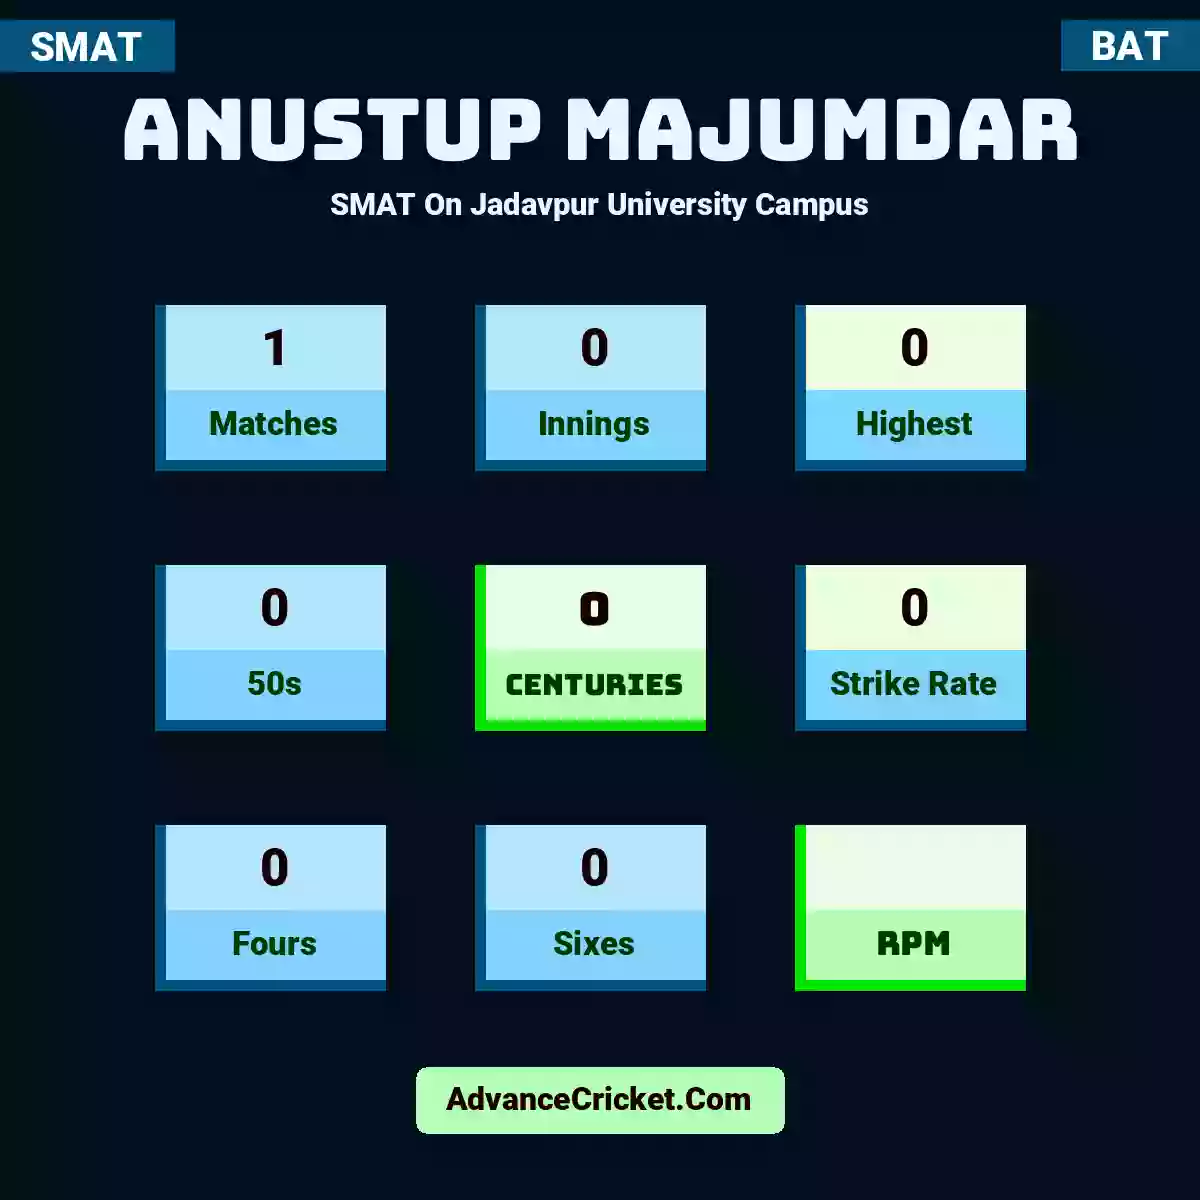 Anustup Majumdar SMAT  On Jadavpur University Campus, Anustup Majumdar played 1 matches, scored 0 runs as highest, 0 half-centuries, and 0 centuries, with a strike rate of 0. A.Majumdar hit 0 fours and 0 sixes.